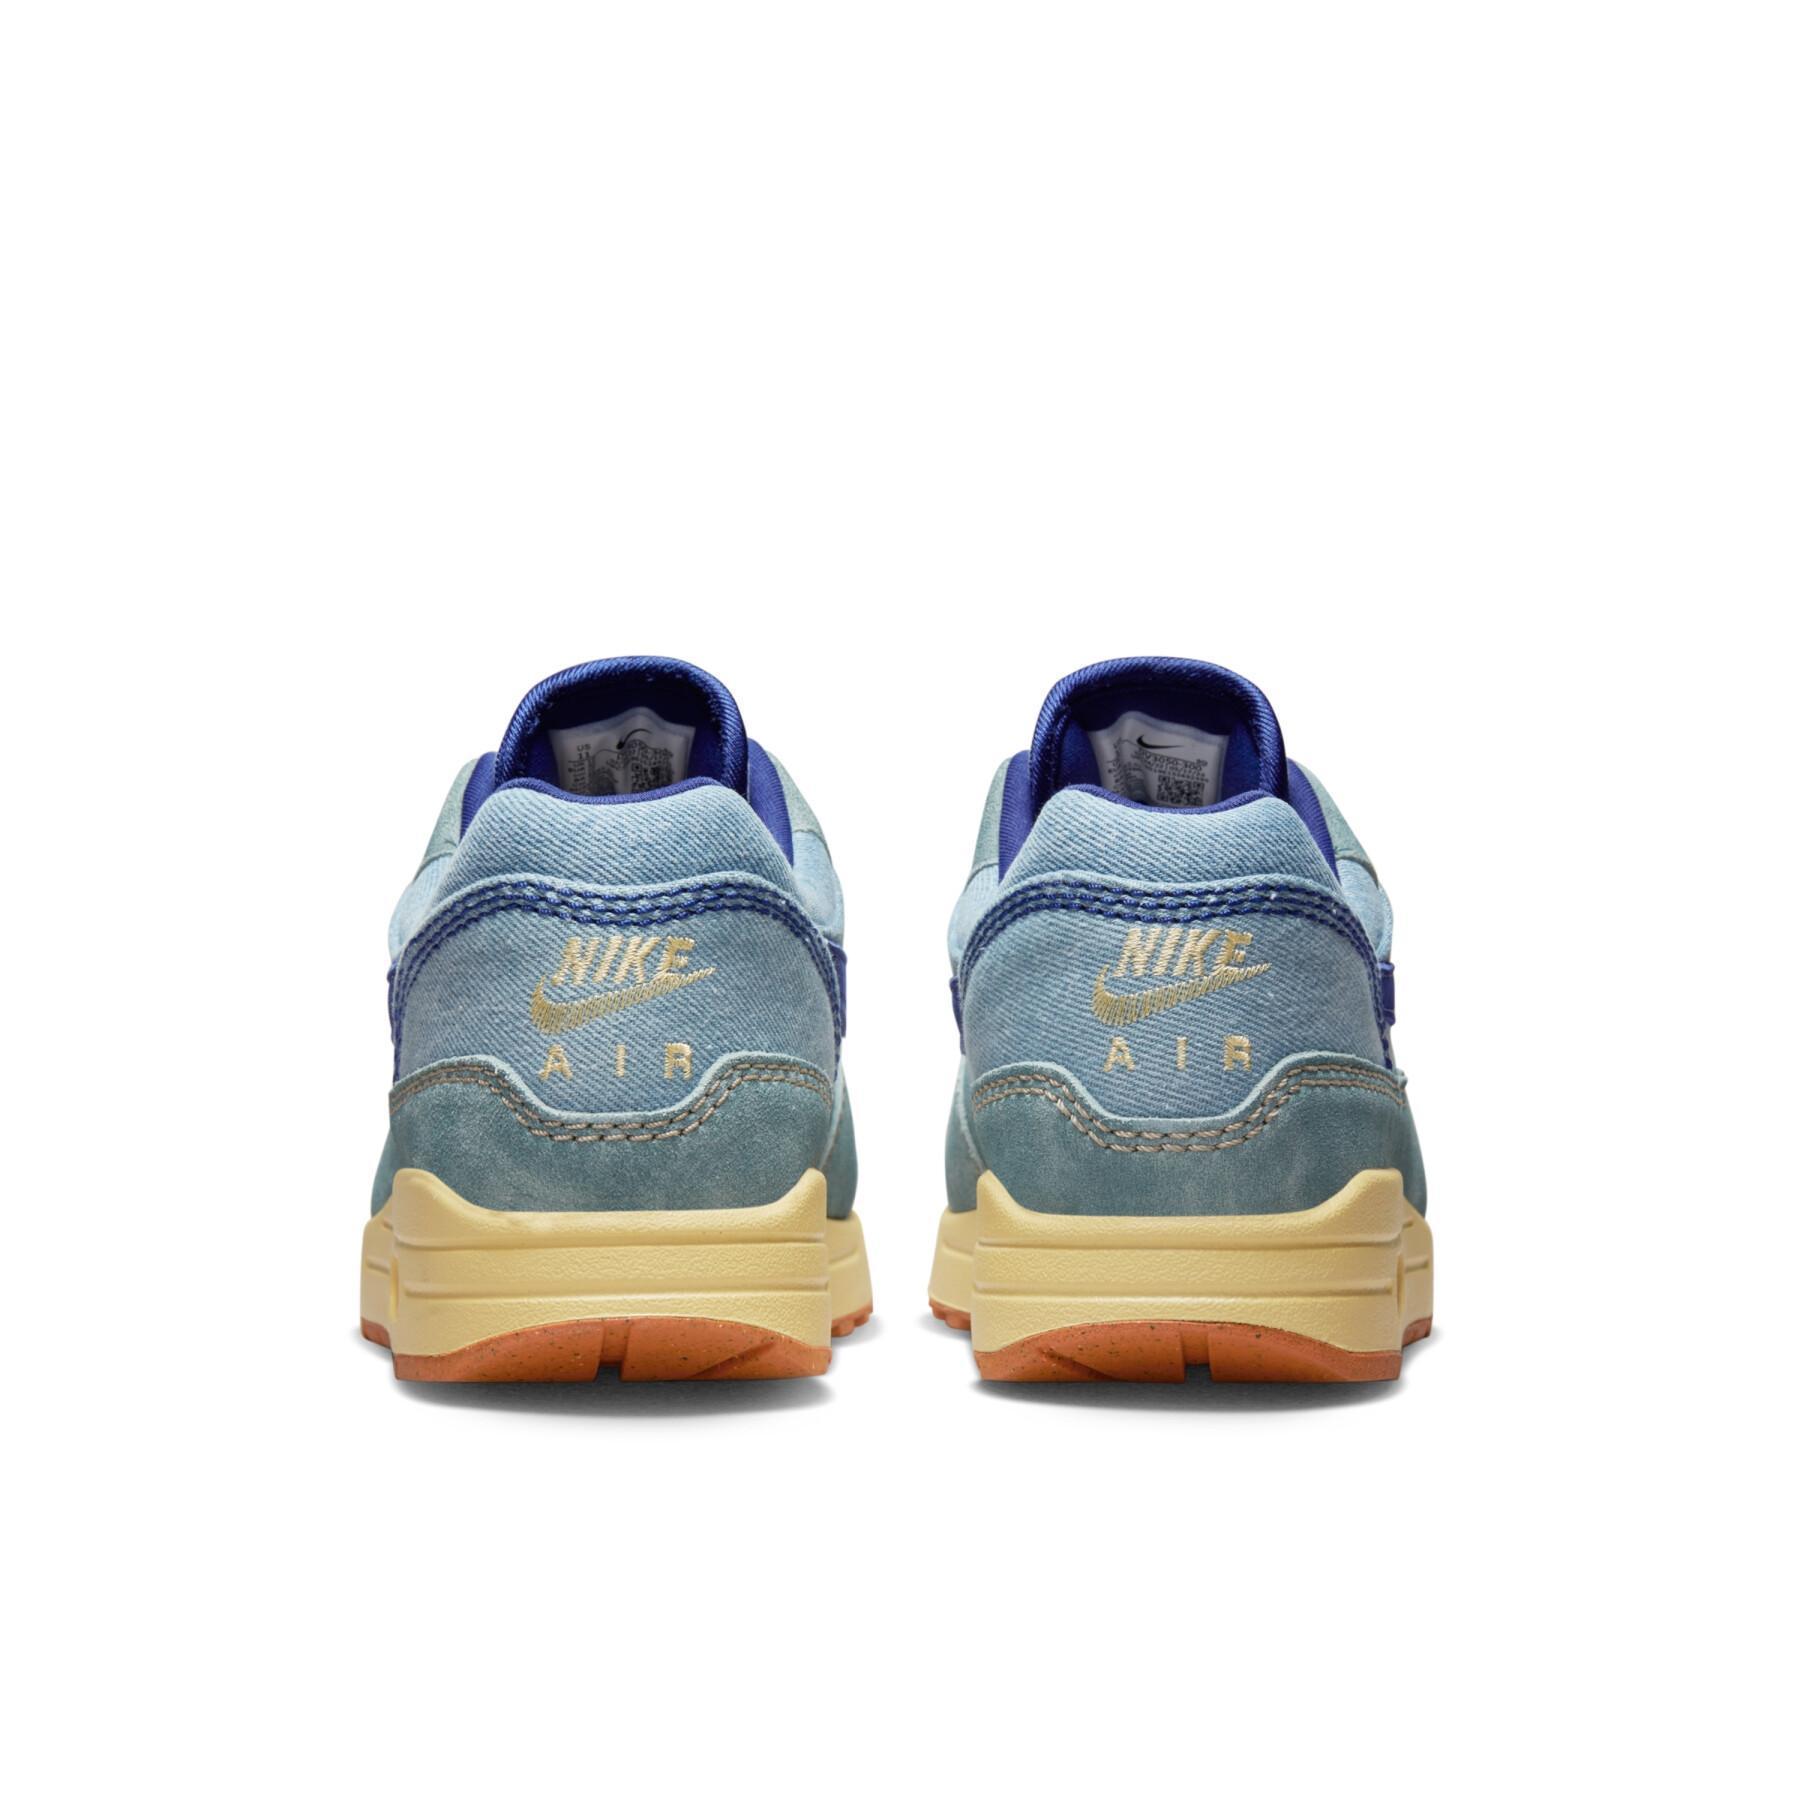 Sneakers Nike Air Max 1 Prm Dirty